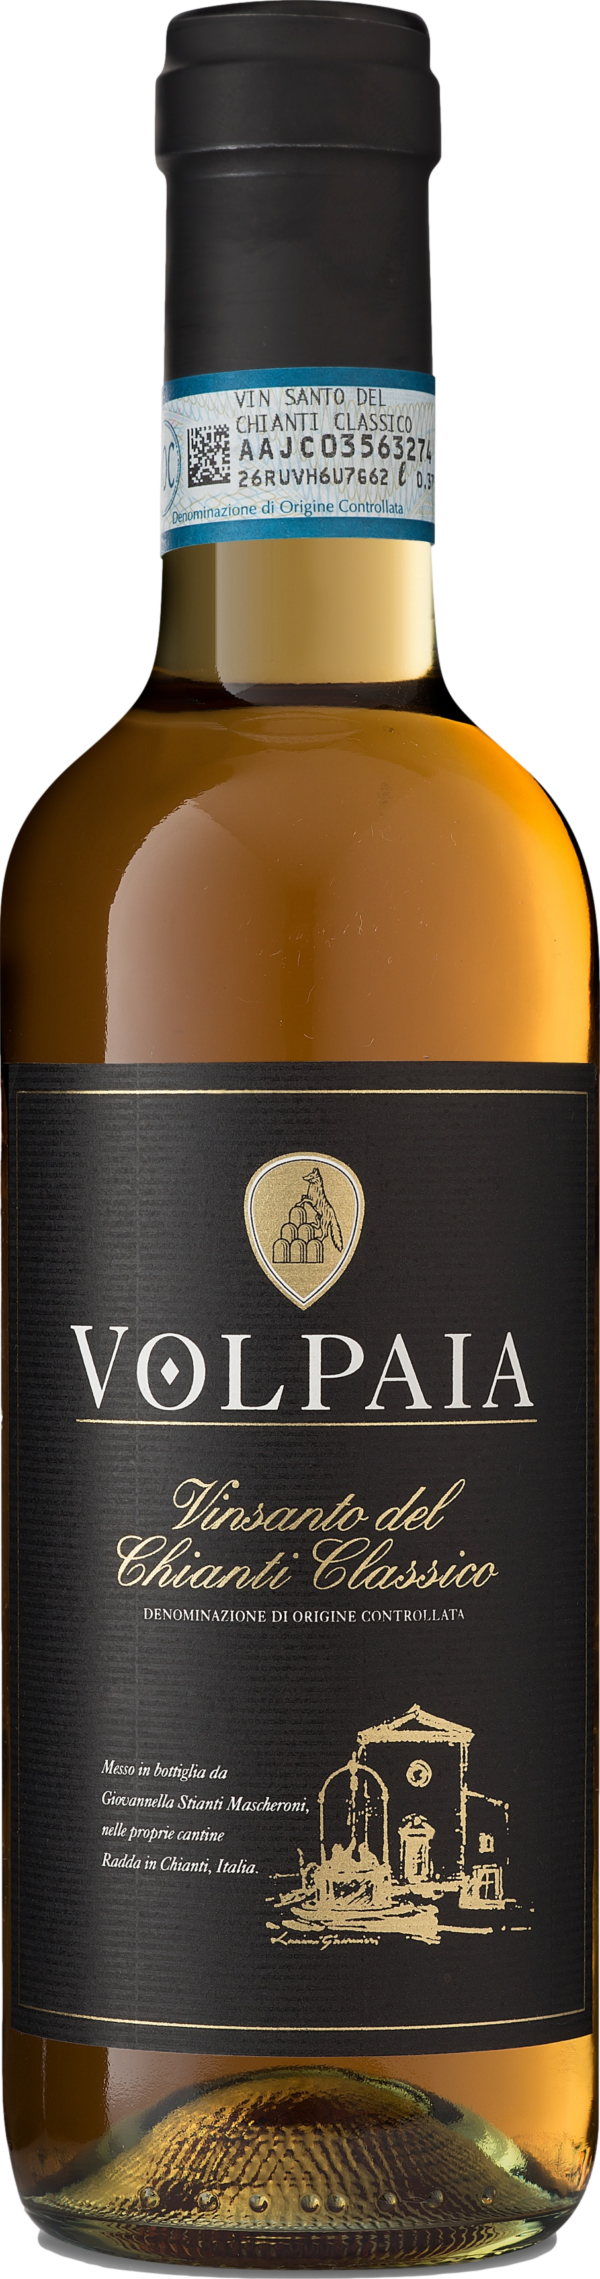 Product image of Castello di Volpaia Vin Santo del Chianti Classico 2015 from 8wines